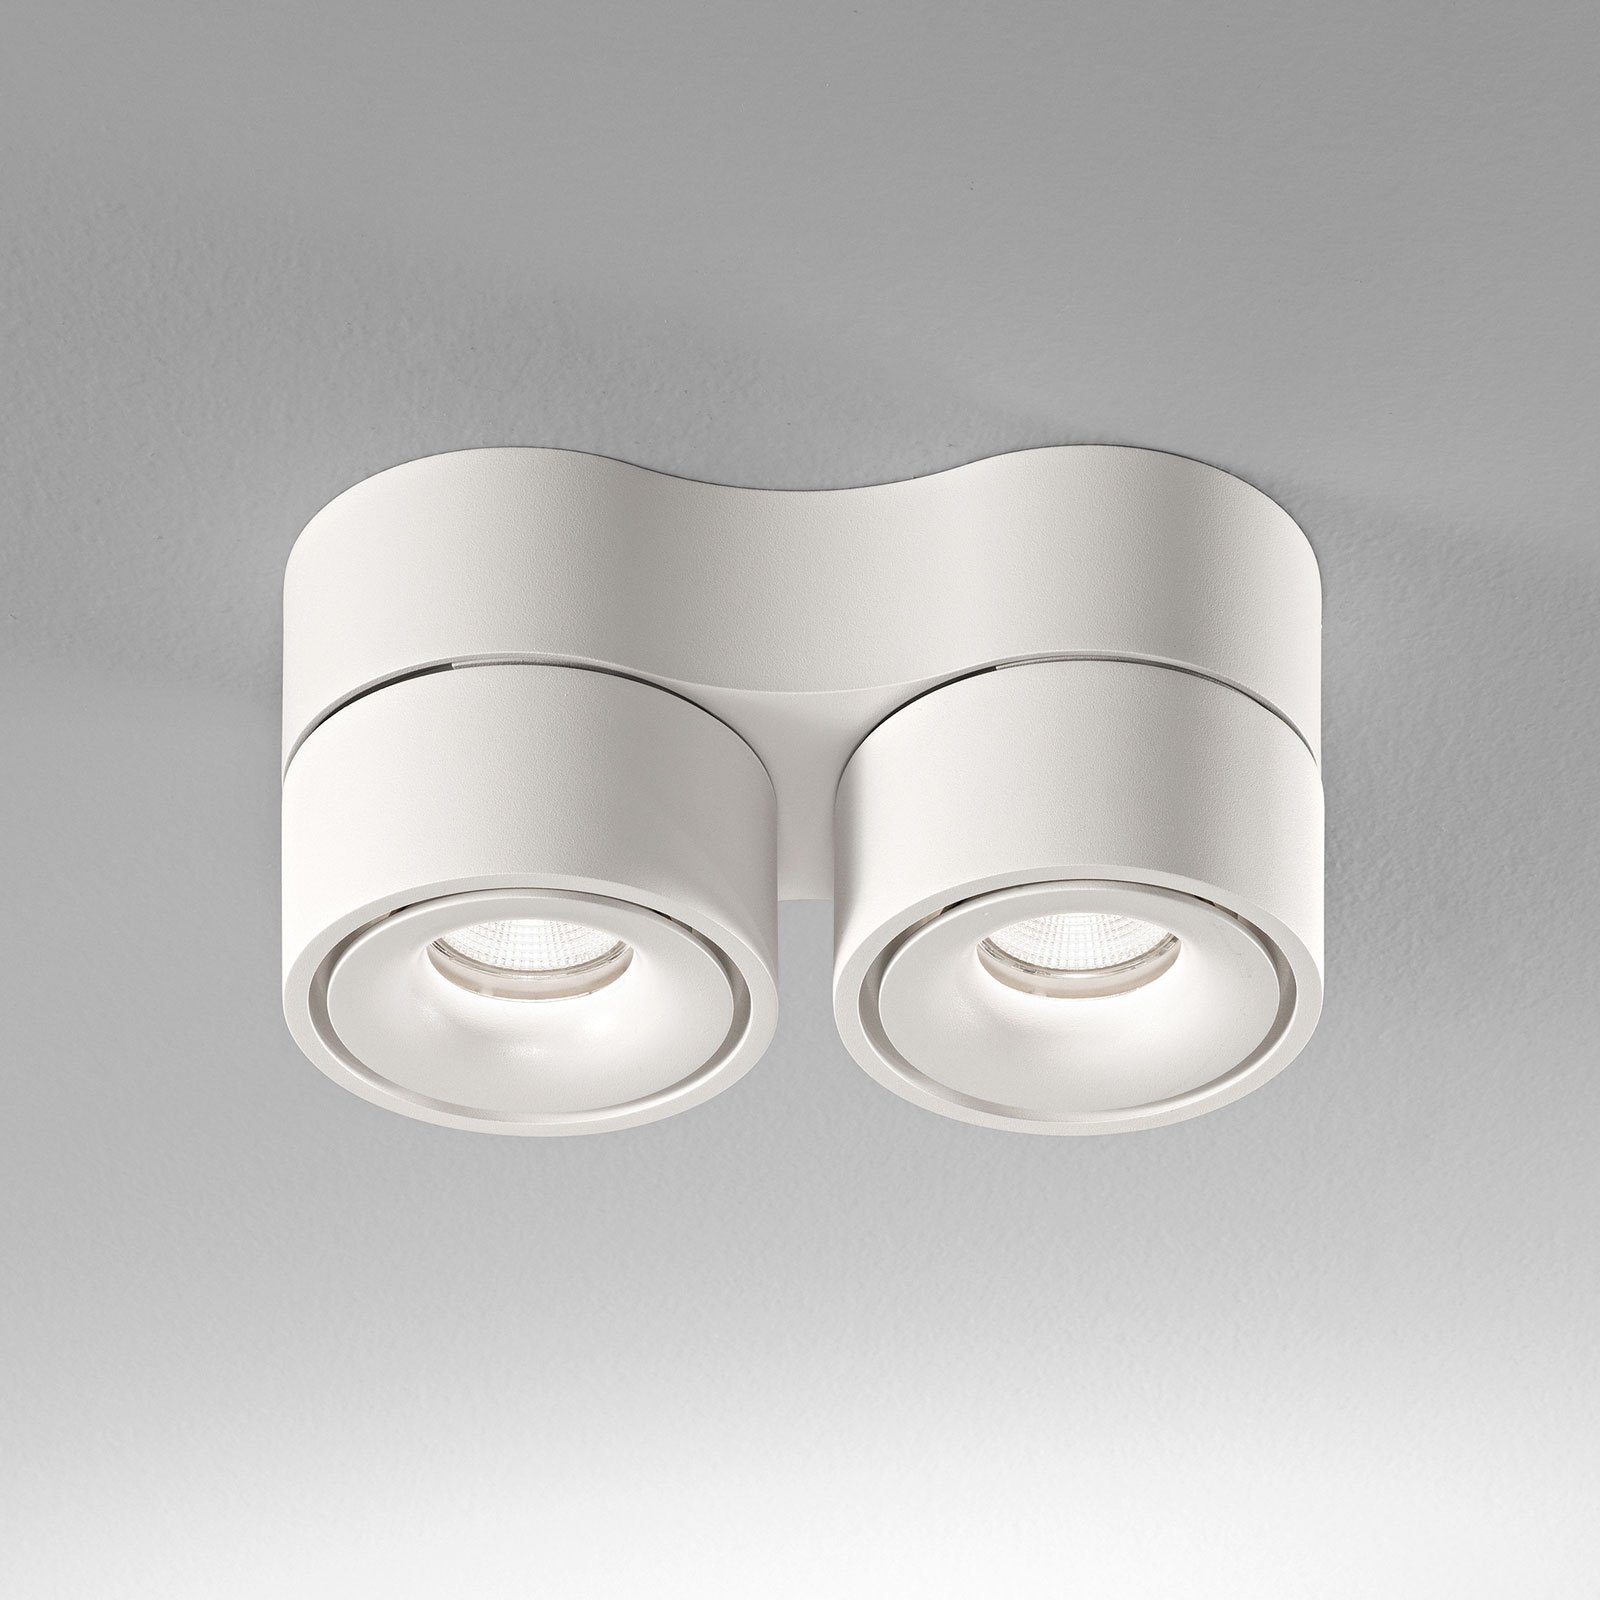 Egger Clippo Duo LED downlight, white, 2,700 K